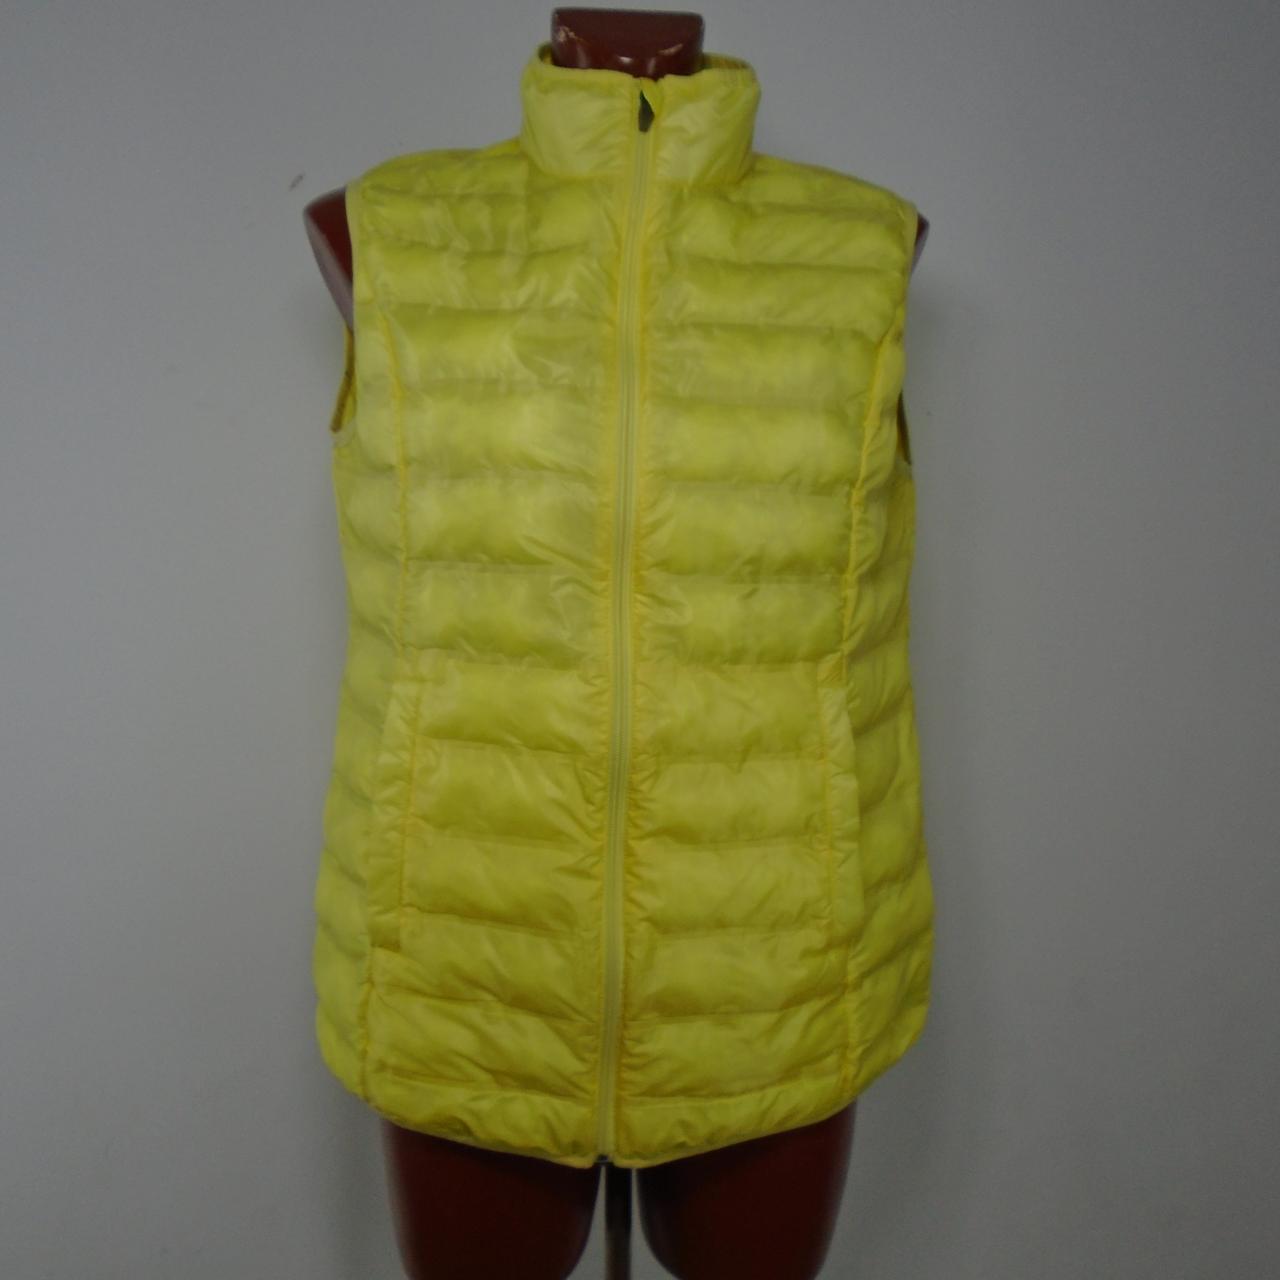 Women's Vest Italy Moda. Yellow. L. Used. Good